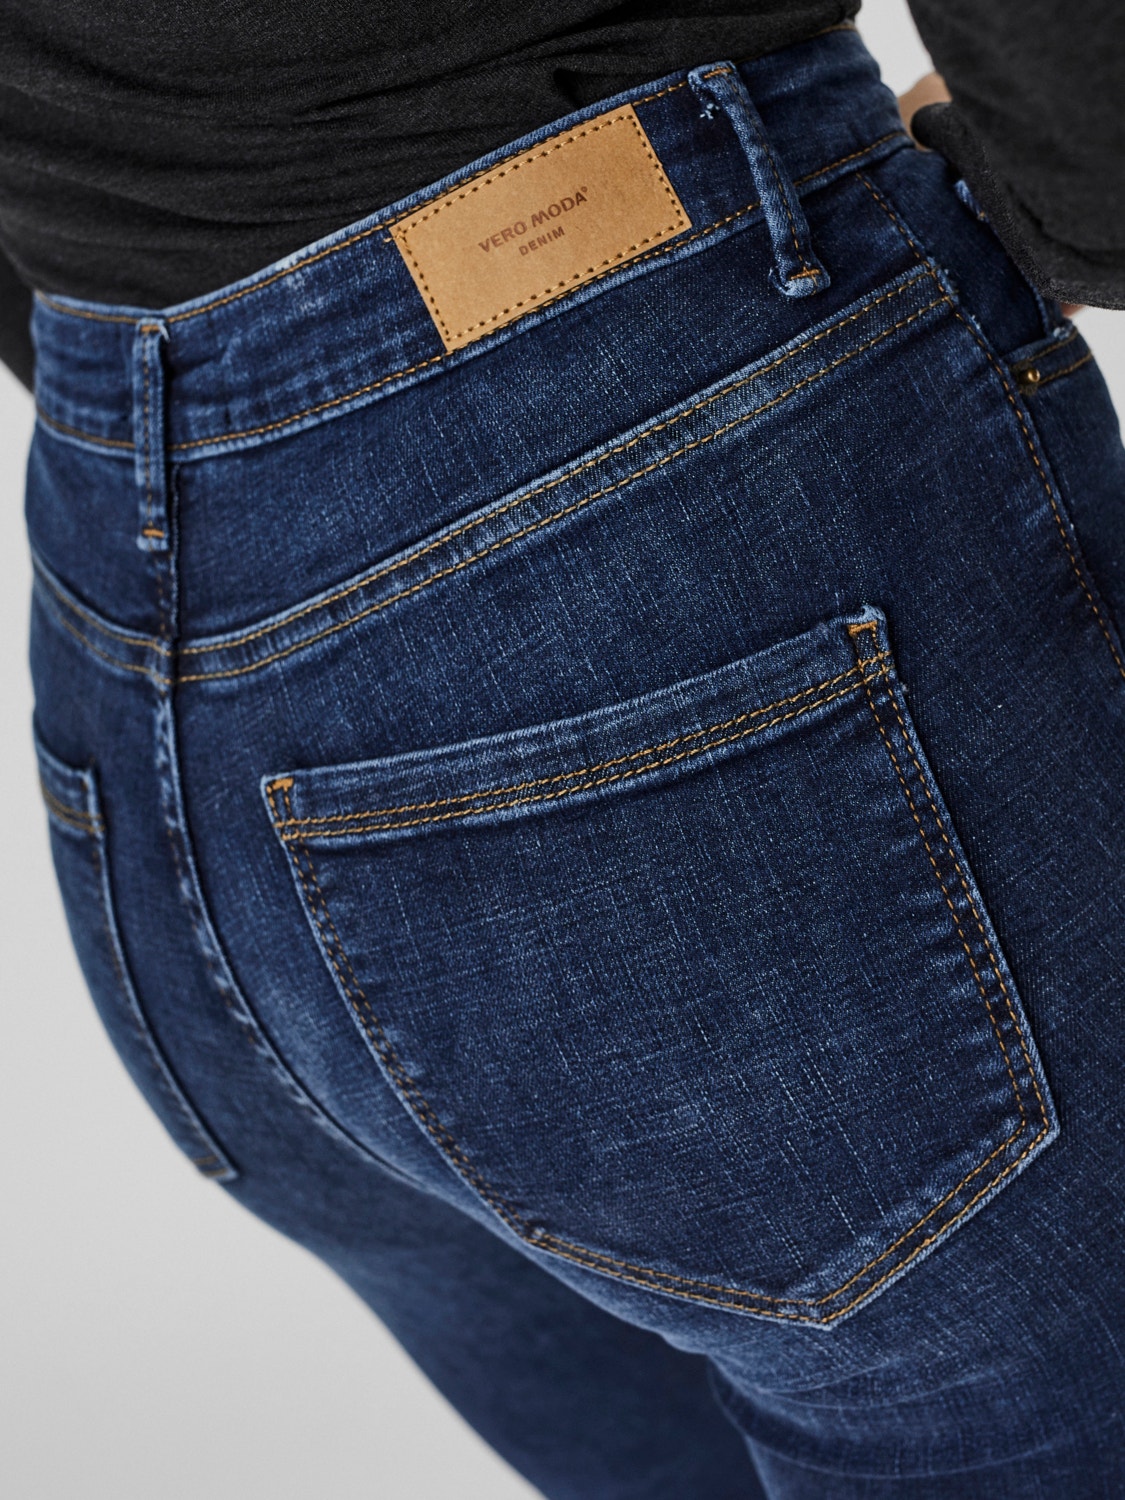 Vero Moda VMSOPHIA High rise Skinny fit Jeans -Dark Blue Denim - 10248830